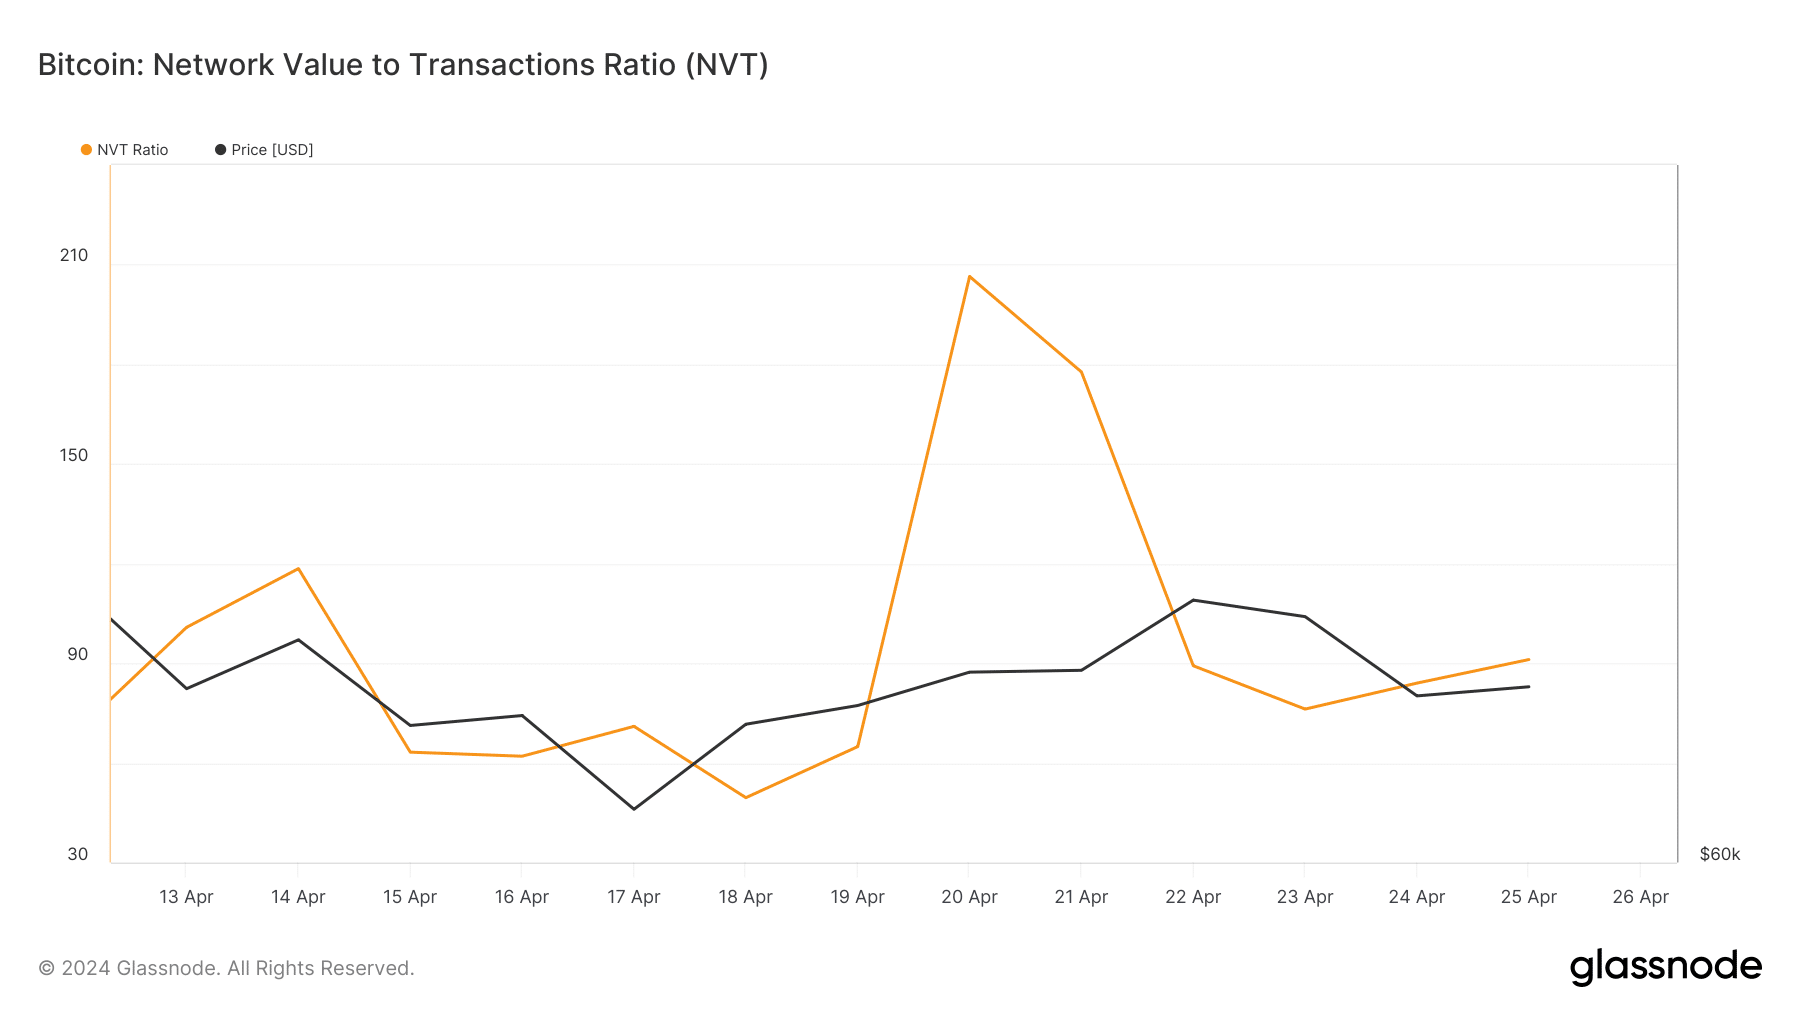 BTC's NVT ratio fell